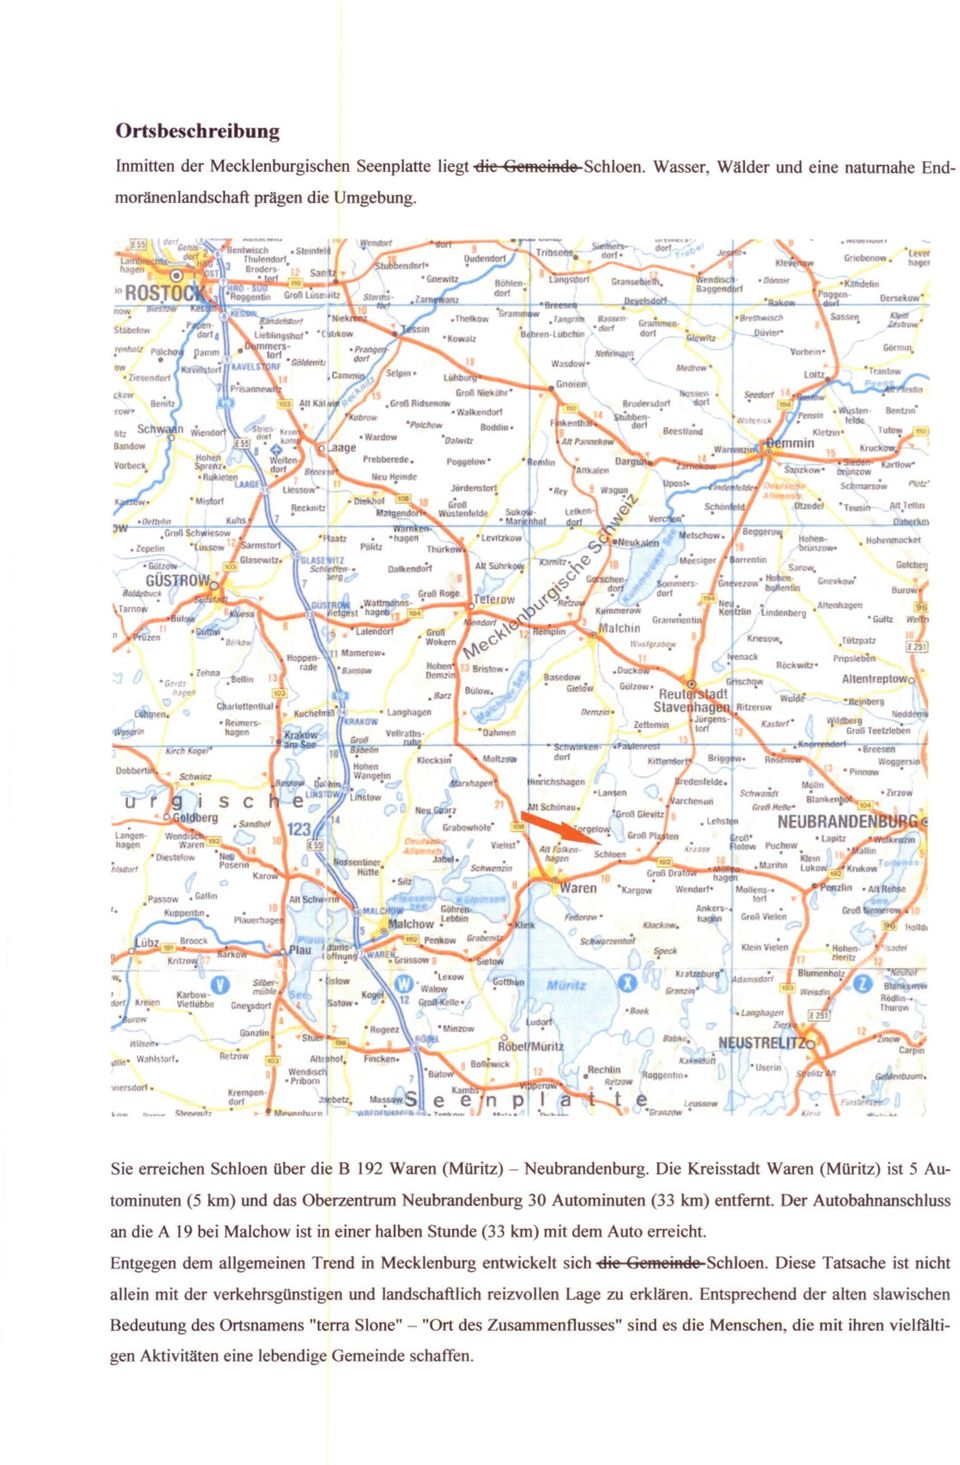 Die Kreisstadt Waren (MOritz) ist 5 Autominuten (5 km) und das Oberzentrum Neubrandenburg 30 Autominuten (33 km) entfernt.